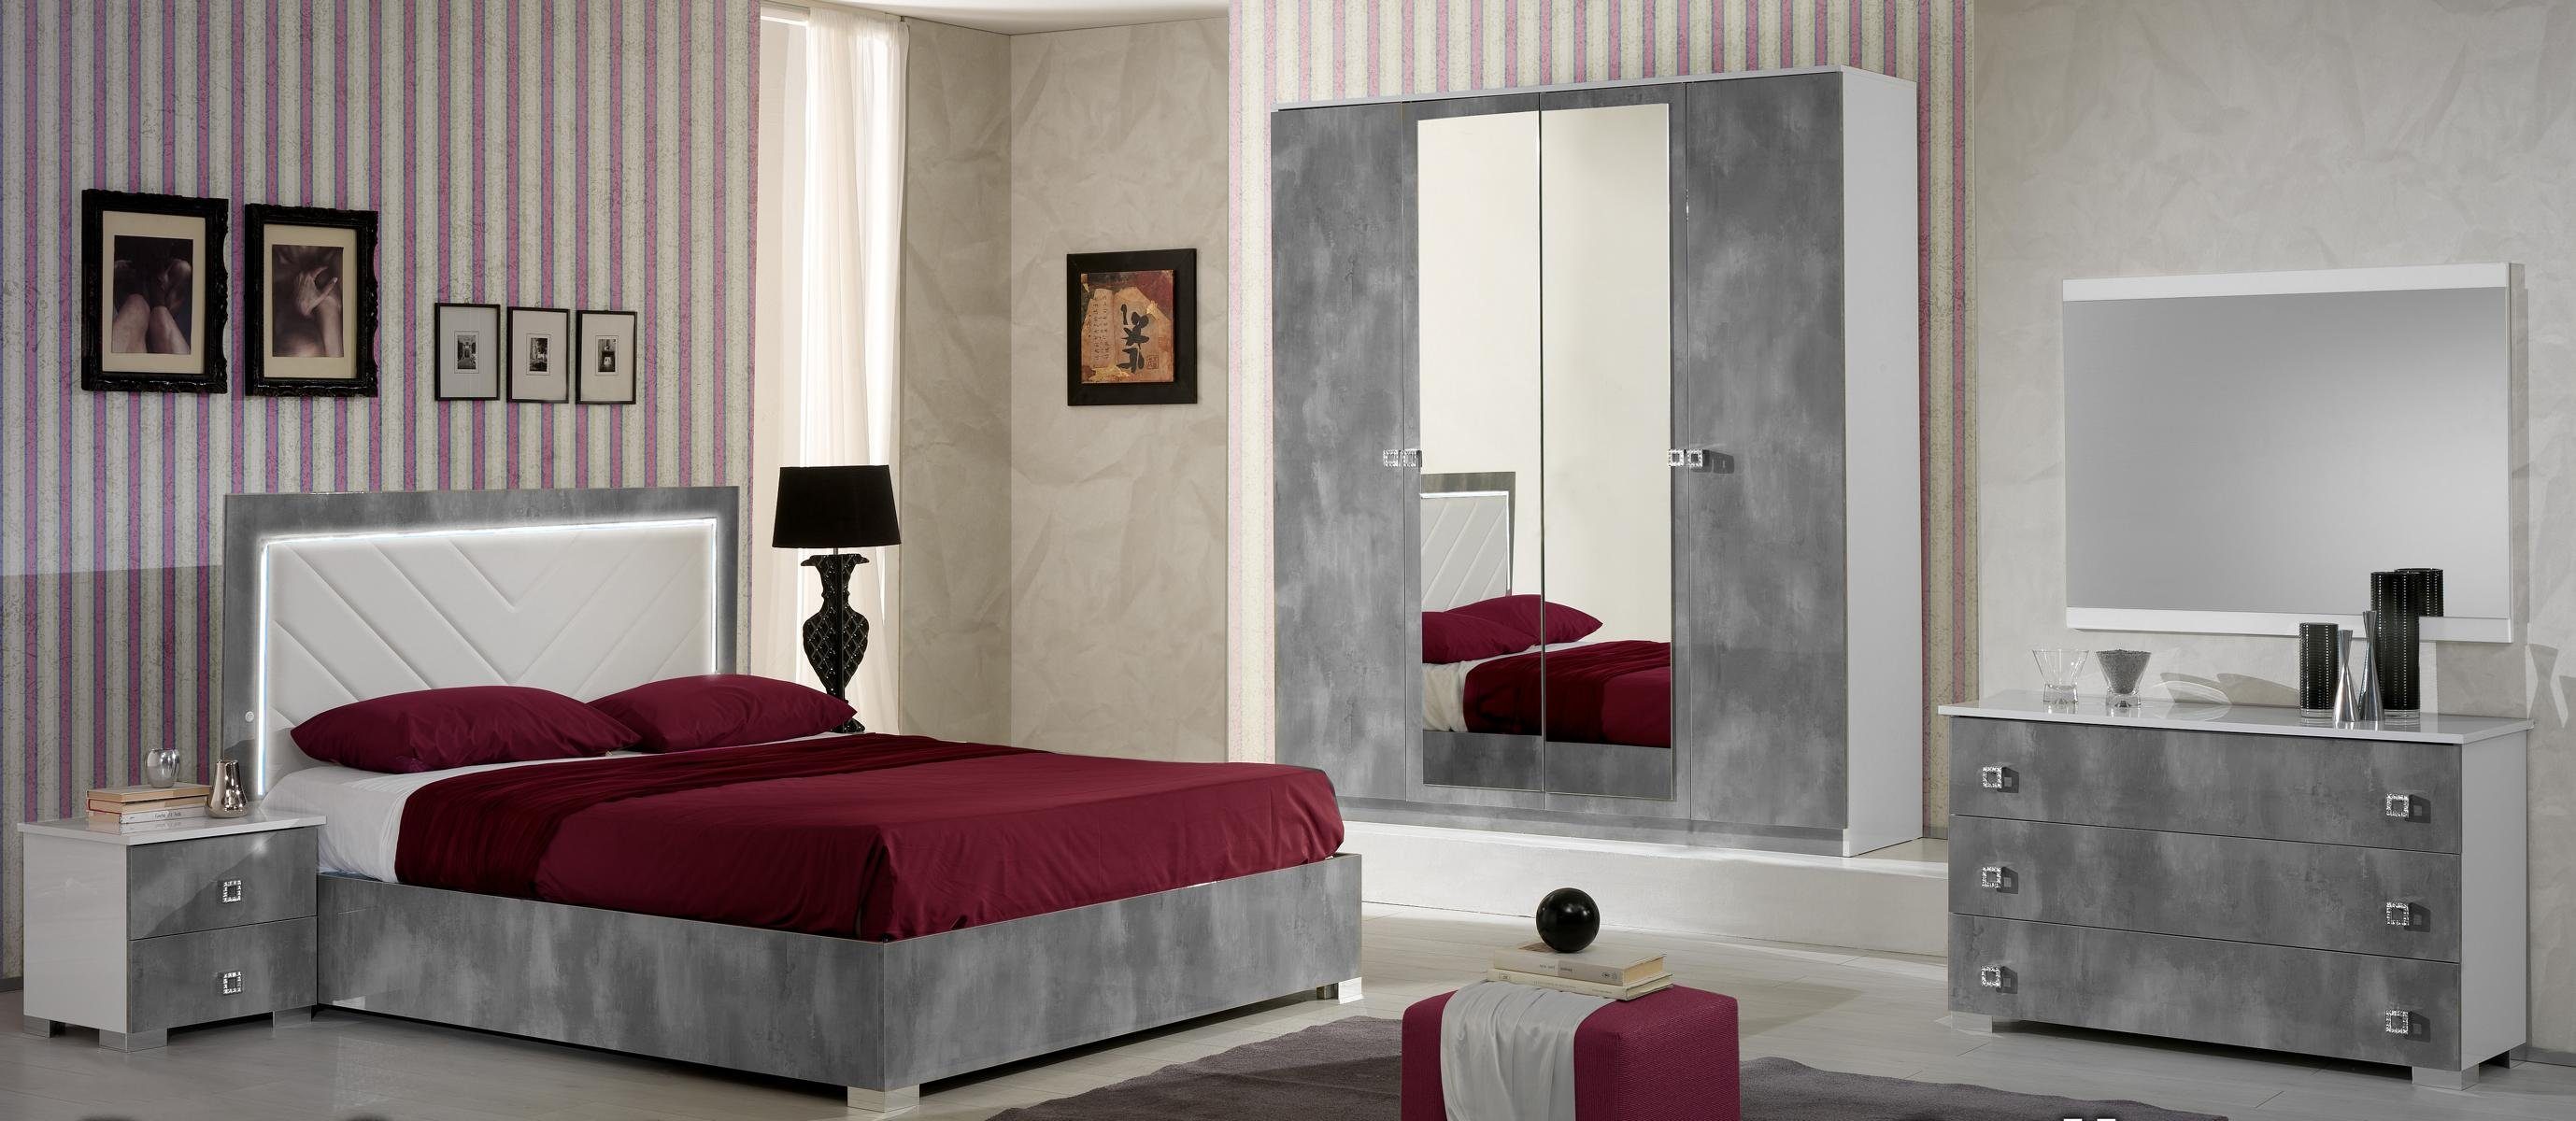 JVmoebel Schlafzimmer-Set, Schlafzimmer Italienische Möbel Set Luxus 6tlg.  Bett Betten Schrank